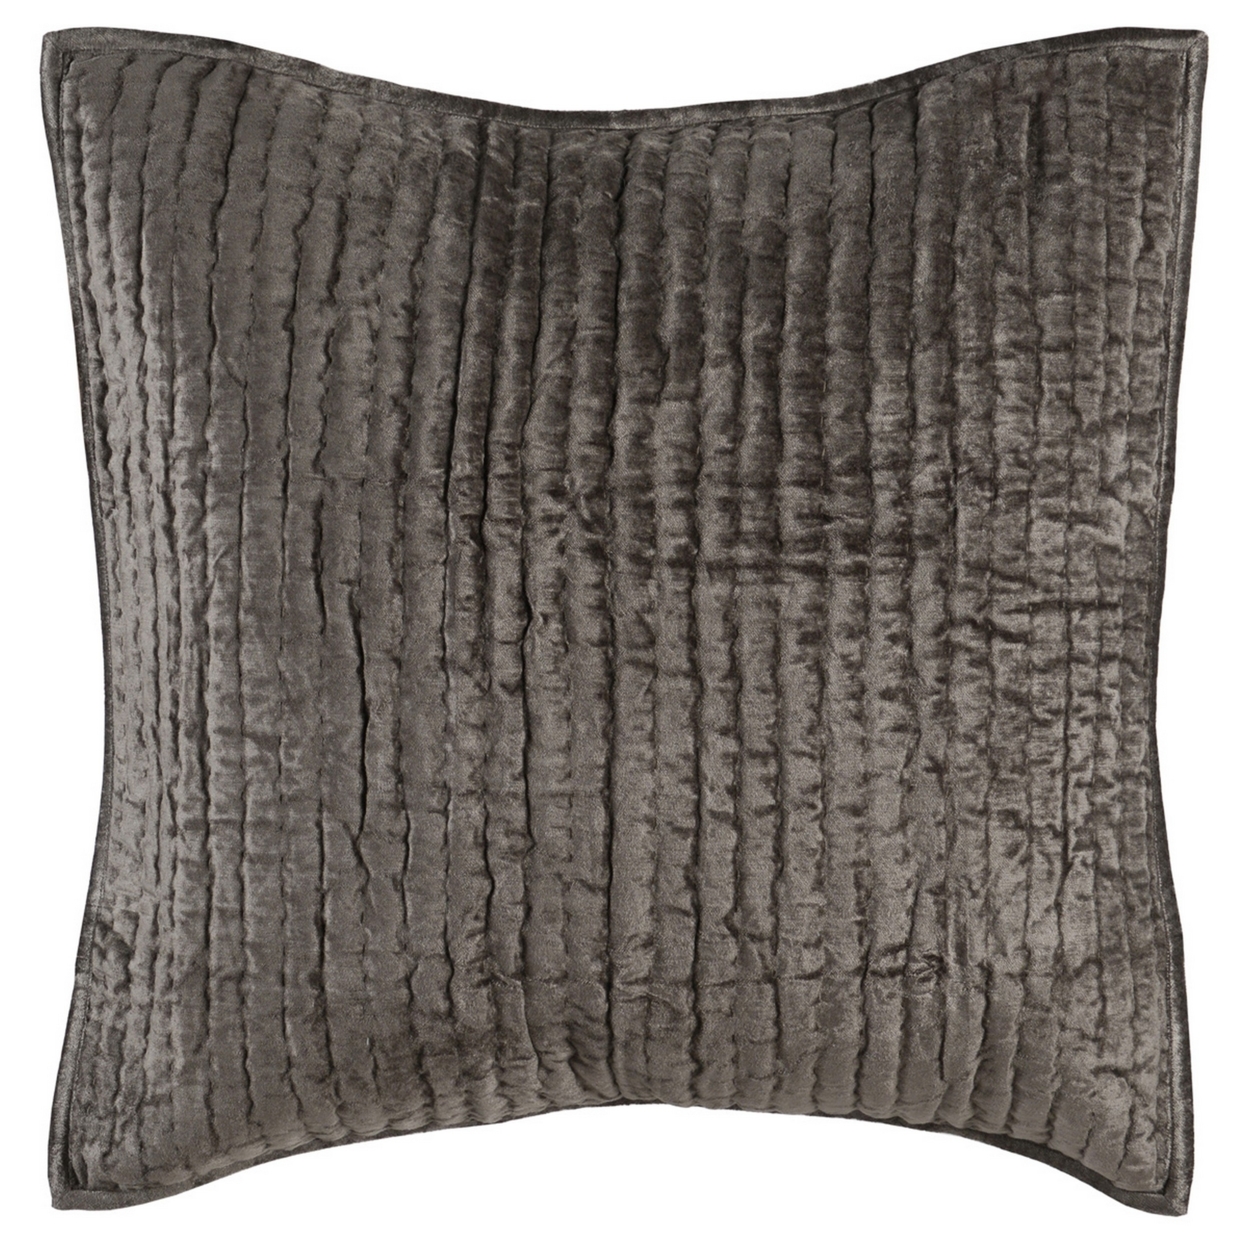 Lipa 26 Inch Square Handmade Euro Pillow Sham, Rayon Velvet, Desert Brown- Saltoro Sherpi